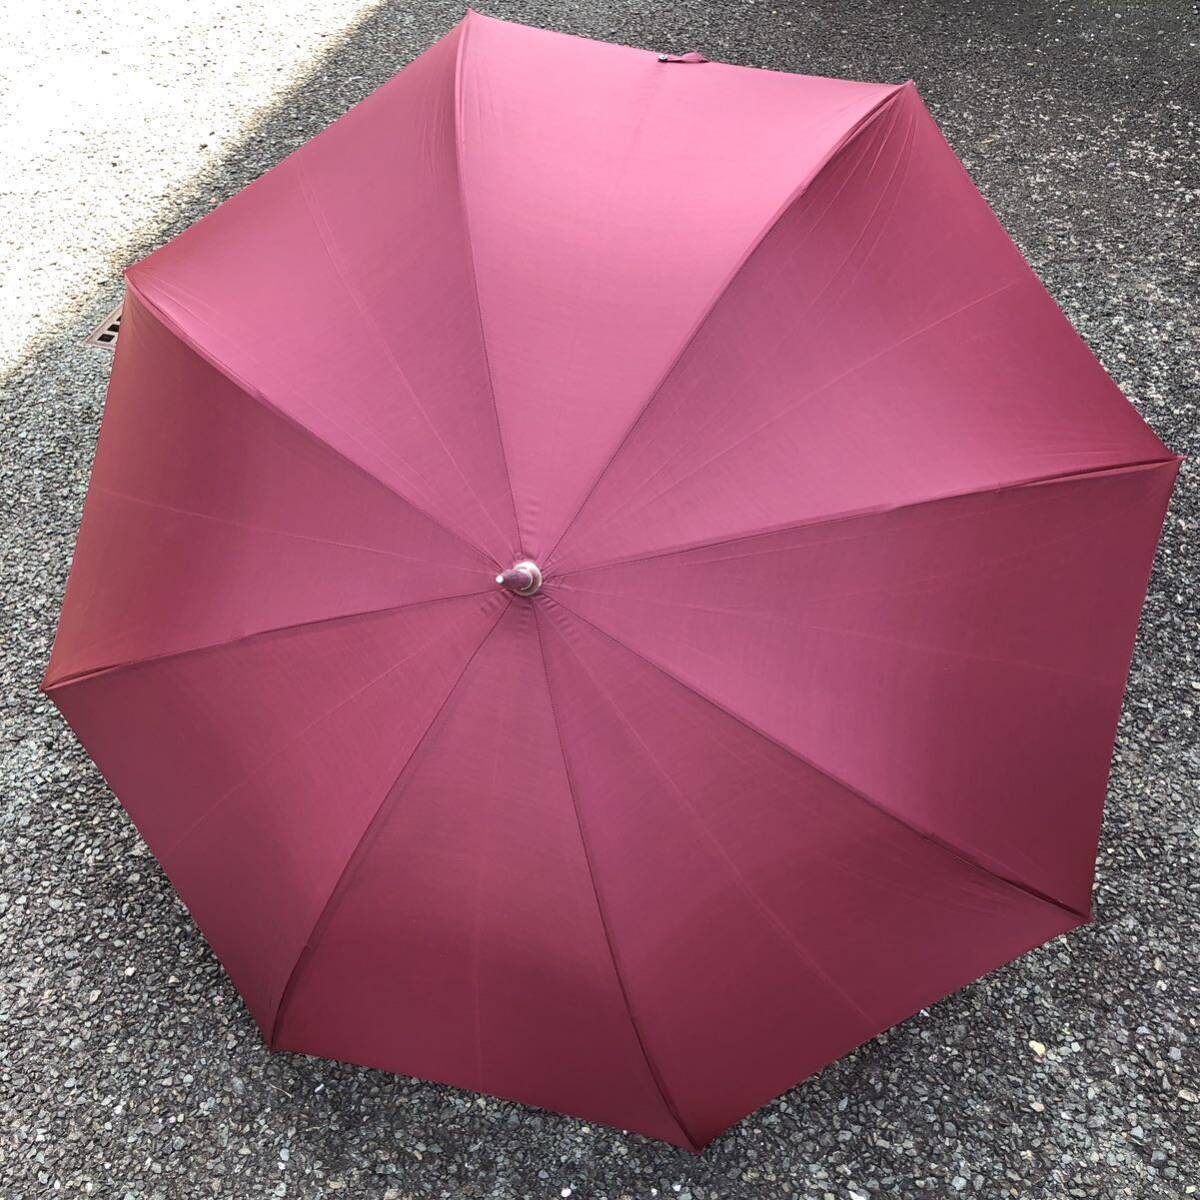 【ブルガリ】本物 BVLGARI 傘 全長106cm 大傘 雨傘 アンブレラ 雨具 長傘 メンズ レディースの画像3